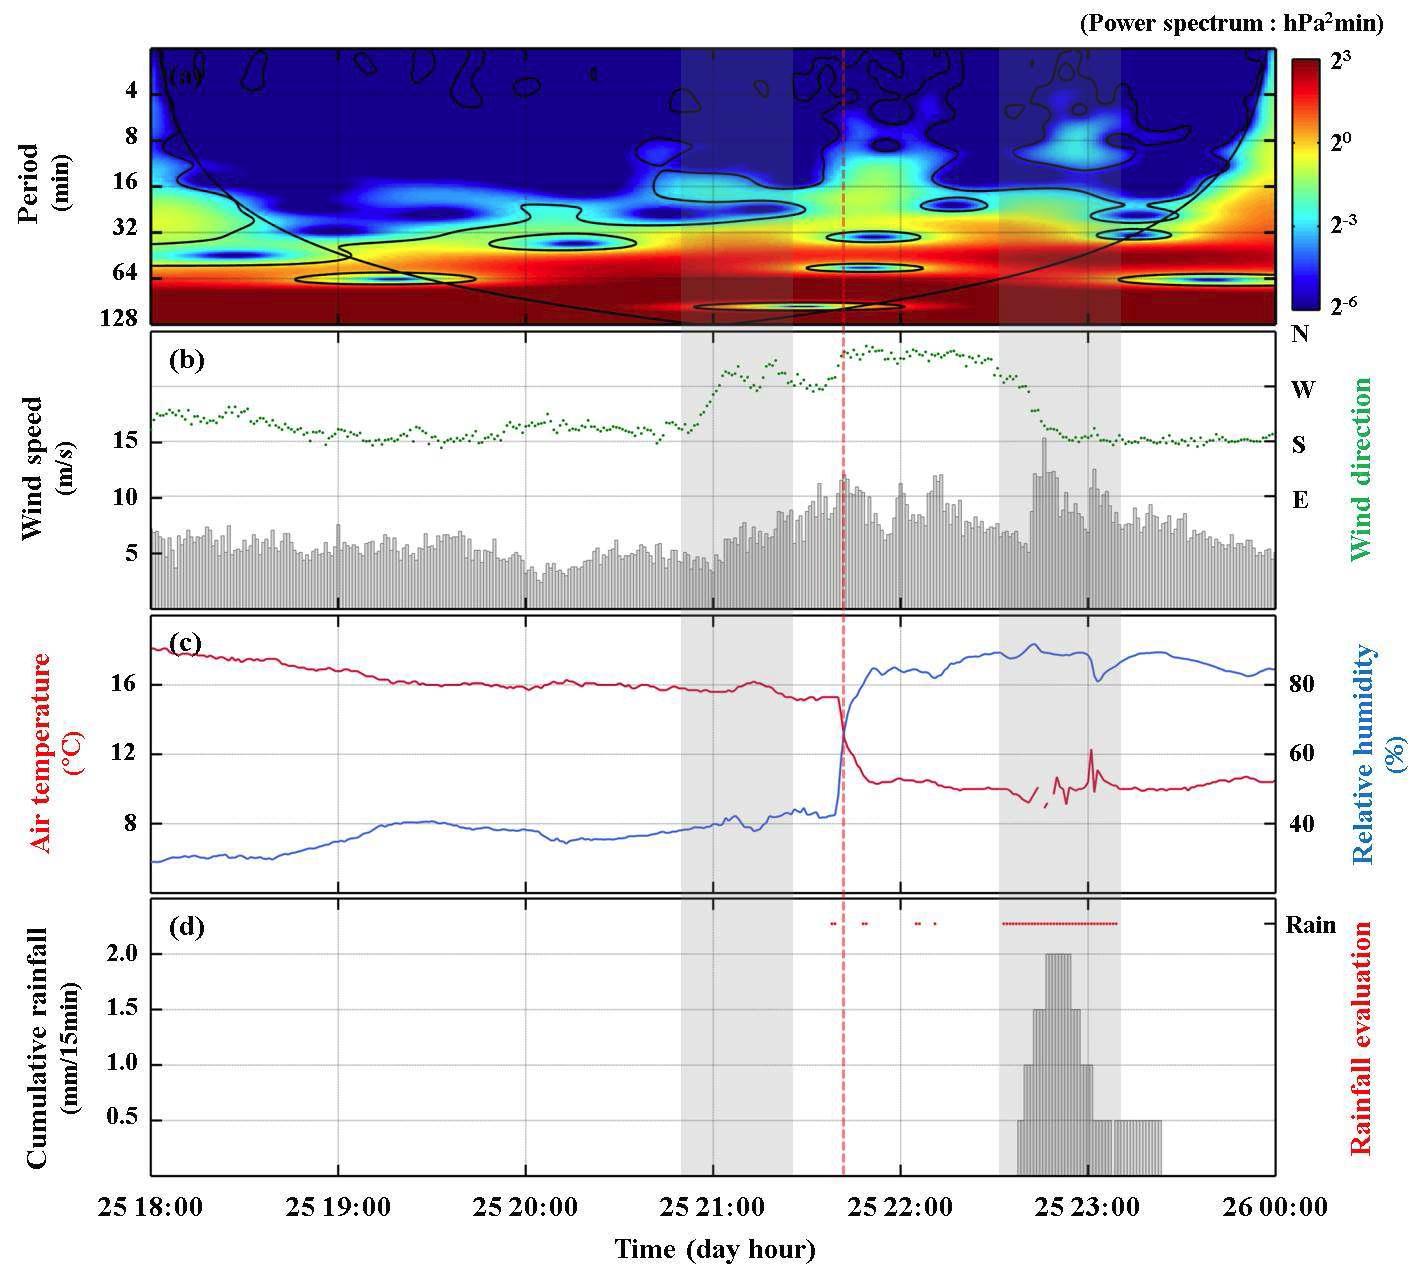 2008년 4월 25일 군산 AWS 분석 결과; (a) 기압 wavelet scaleogram, (b) 바람, (c) 기온, 상대습도, (d) 누적 강우량, 강우유무